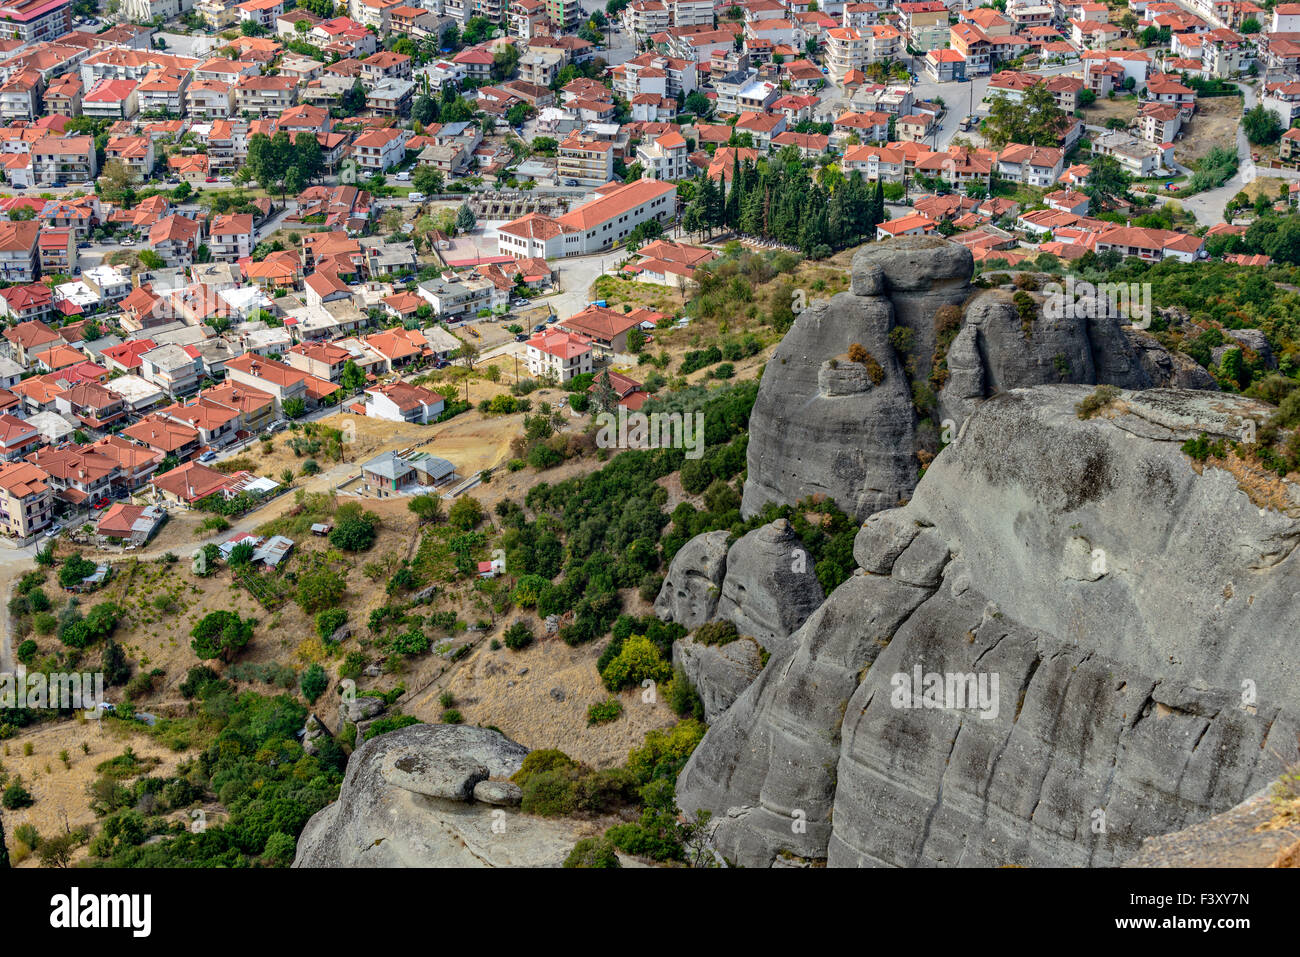 Vista aérea de la pequeña ciudad de Grecia Foto de stock